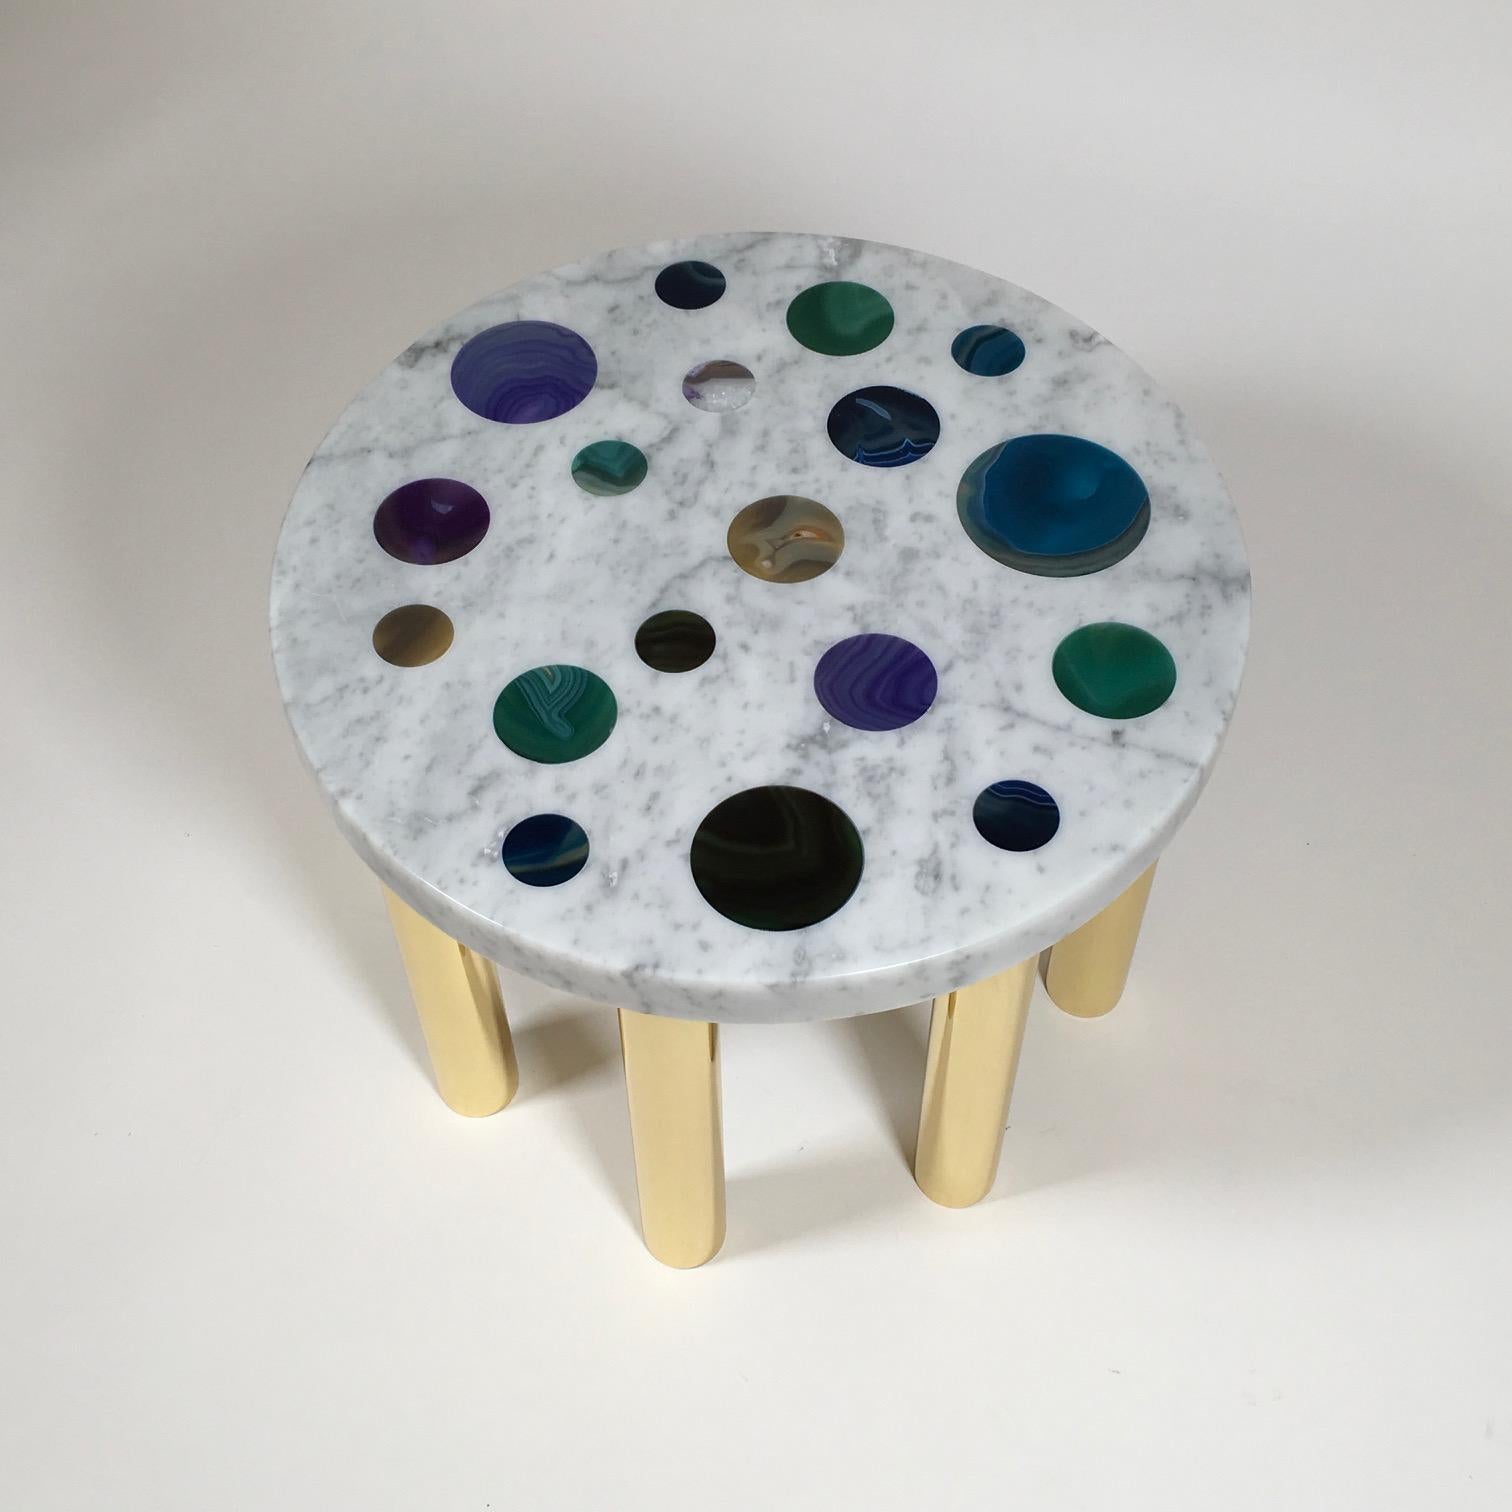 Couchtisch Modell Cosmos aus Carrara-Marmor mit Achatscheiben in verschiedenen Farben und mit 8 Beinen aus Messing, entworfen von Studio Superego für Superego Editions, im Jahr 2018.

Biografie
Superego Editions wurde 2006 gegründet und betreibt